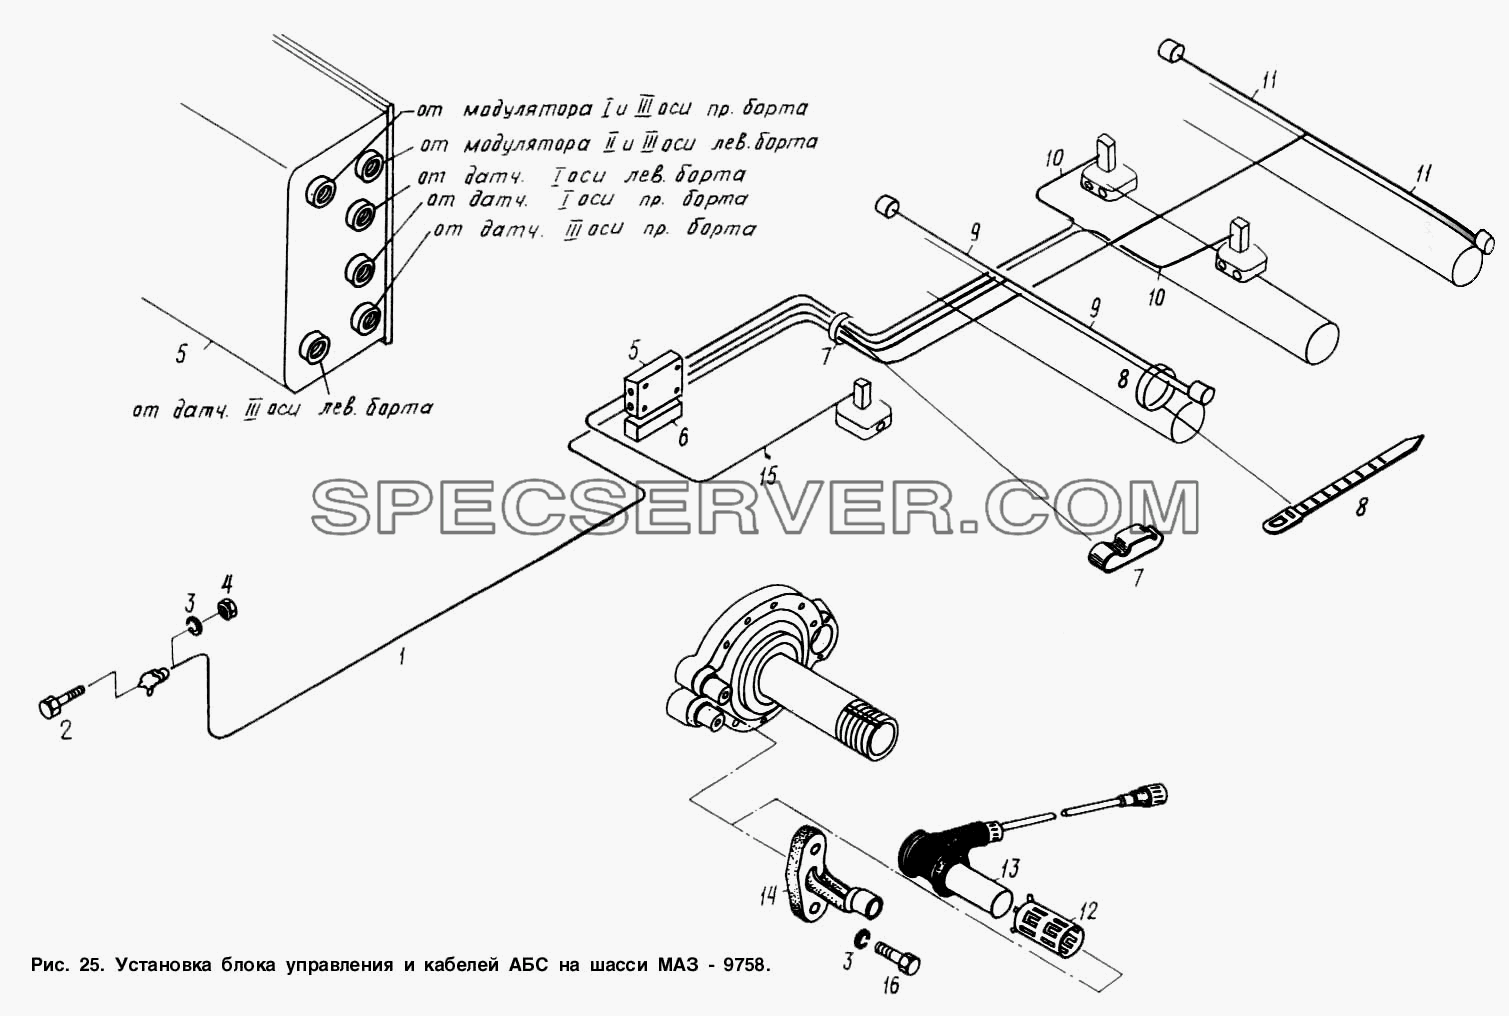 Установка блока управления и кабелей АБС на шасси МАЗ-9758 для МАЗ-9758 (список запасных частей)